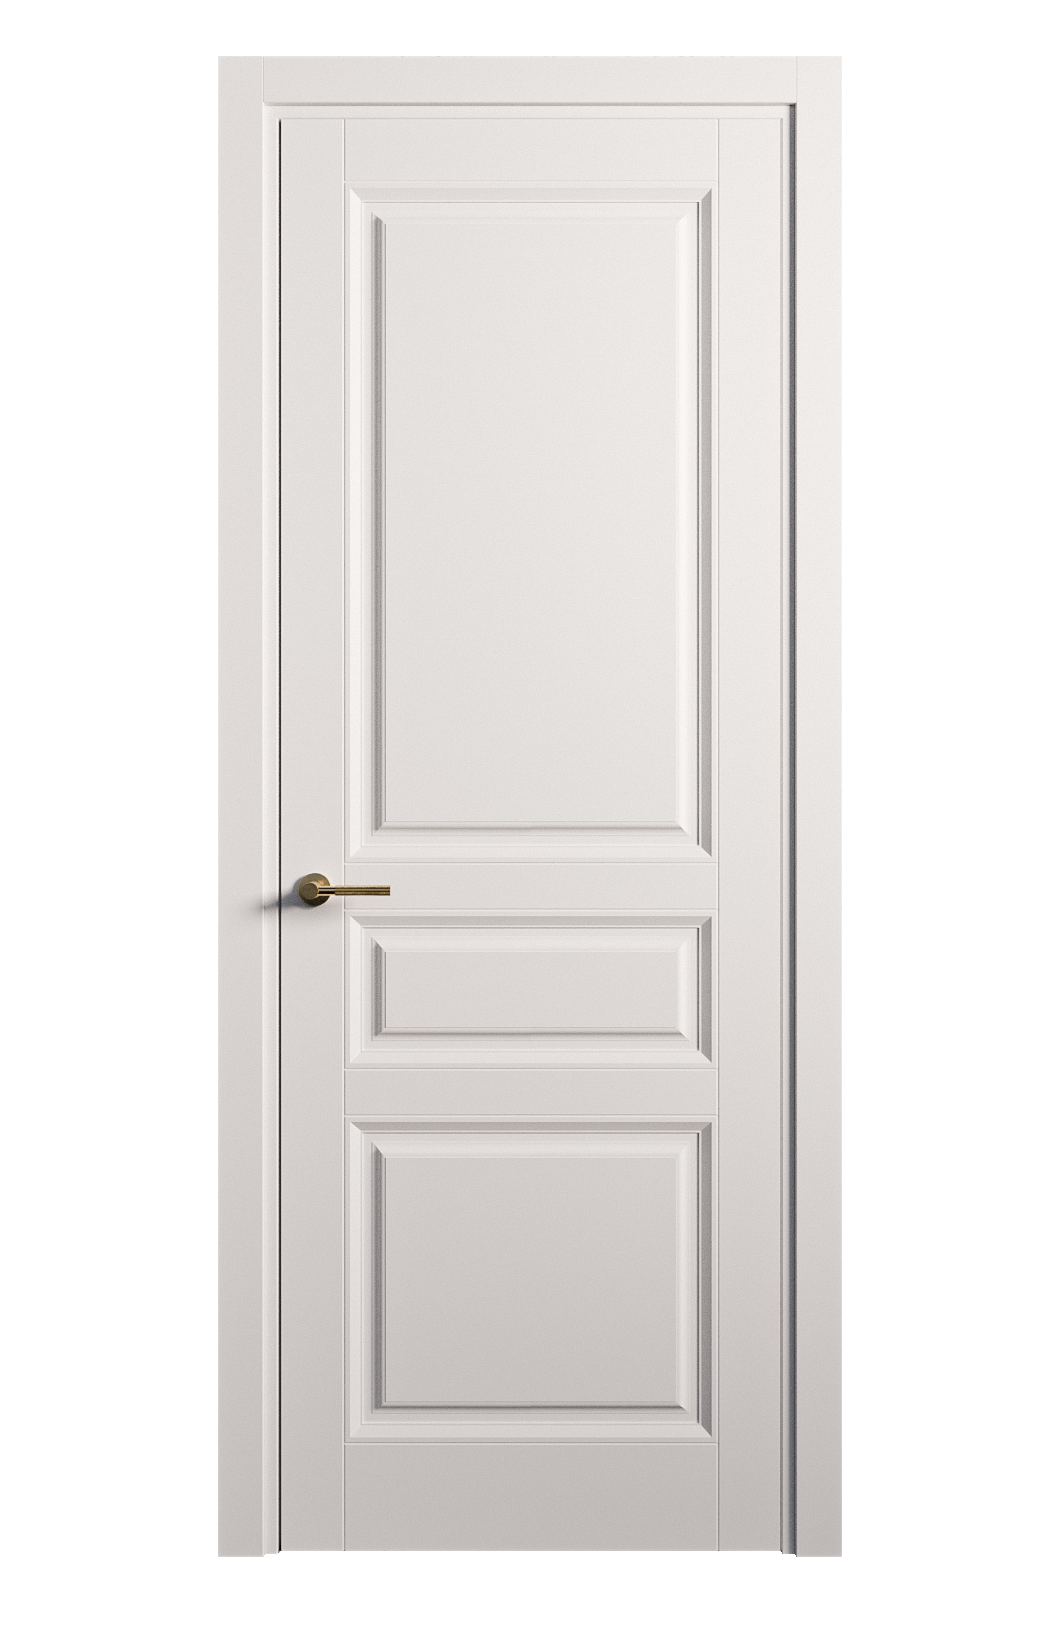 Межкомнатная дверь Venezia-2 глухая эмаль ral 9003 25712